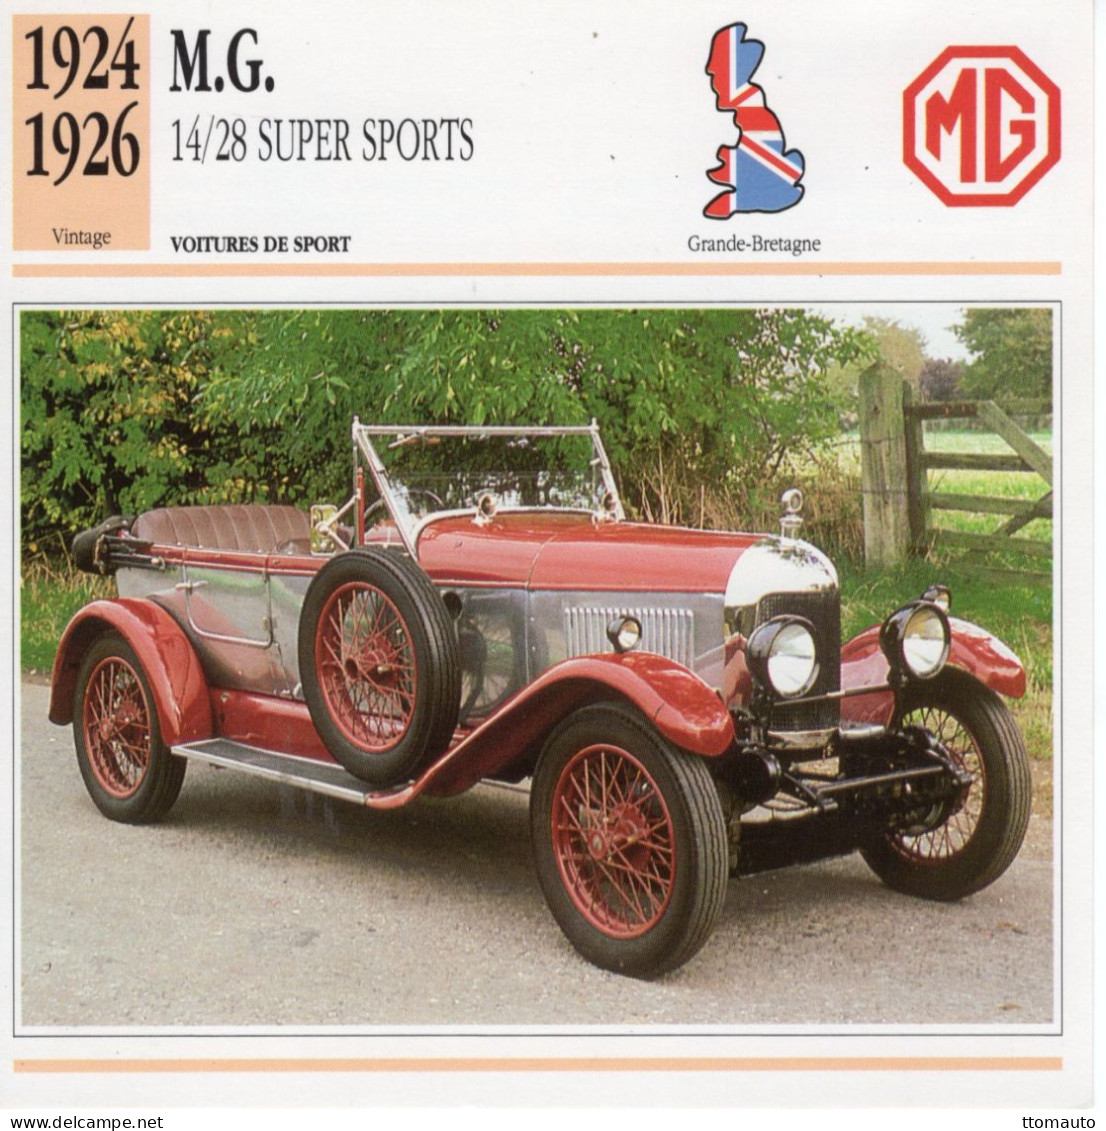 Fiche  -  Voiture De Sport  -  M.G. 14/28 Super Sports  (1926)   -  Carte De Collection - Automobili